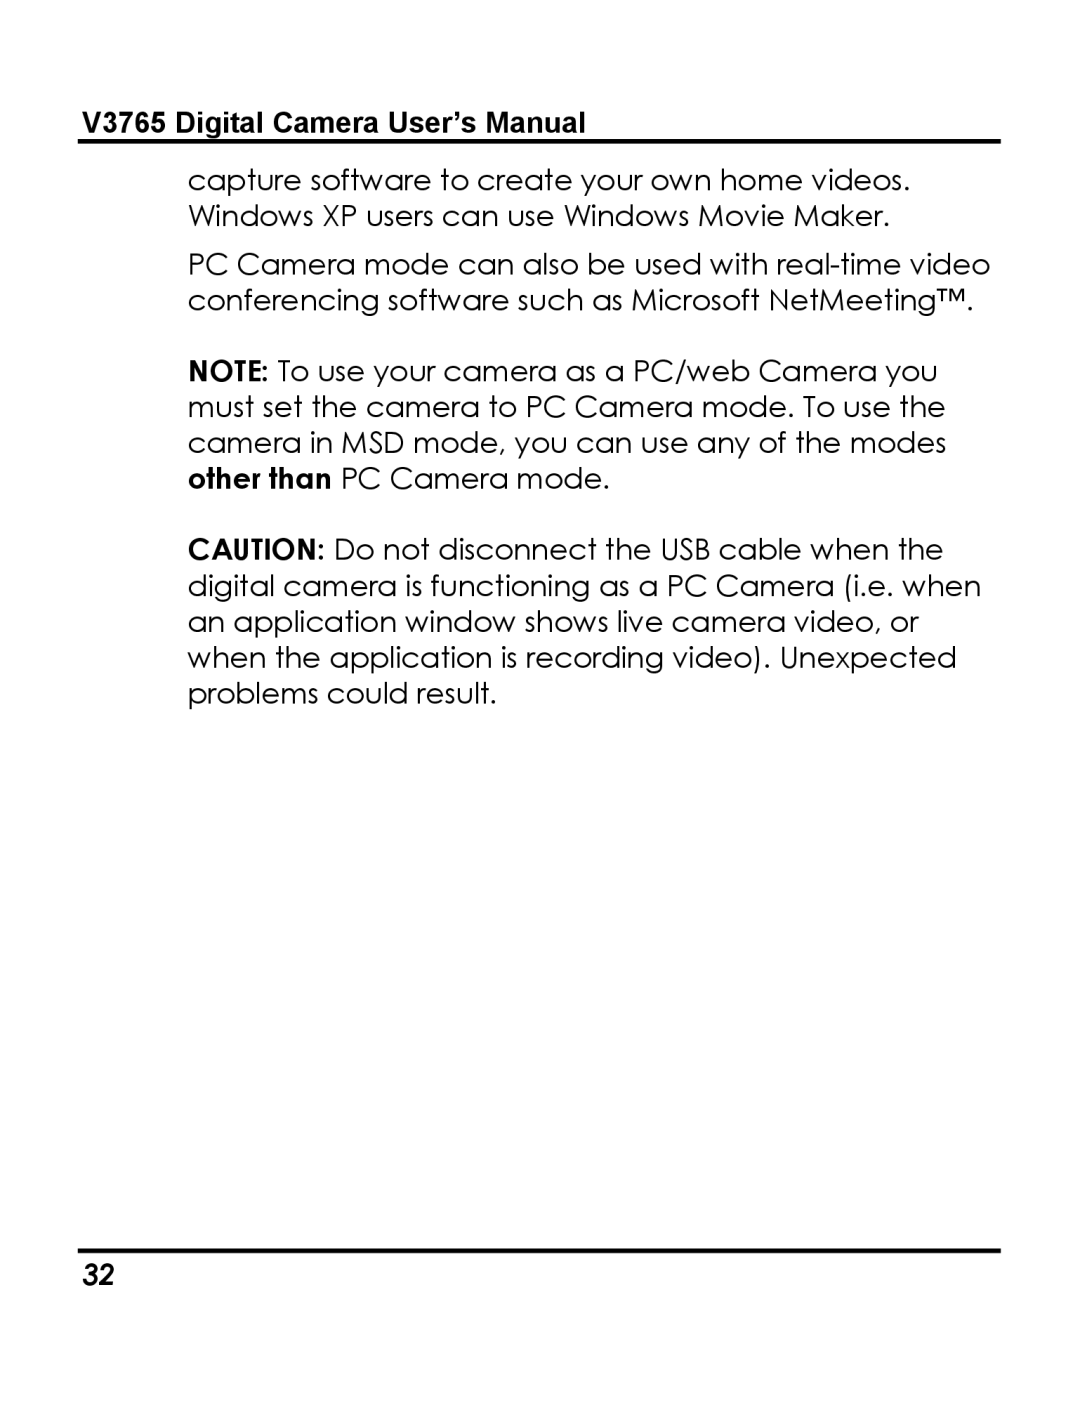 Vivitar instruction manual V3765 Digital Camera User’s Manual 